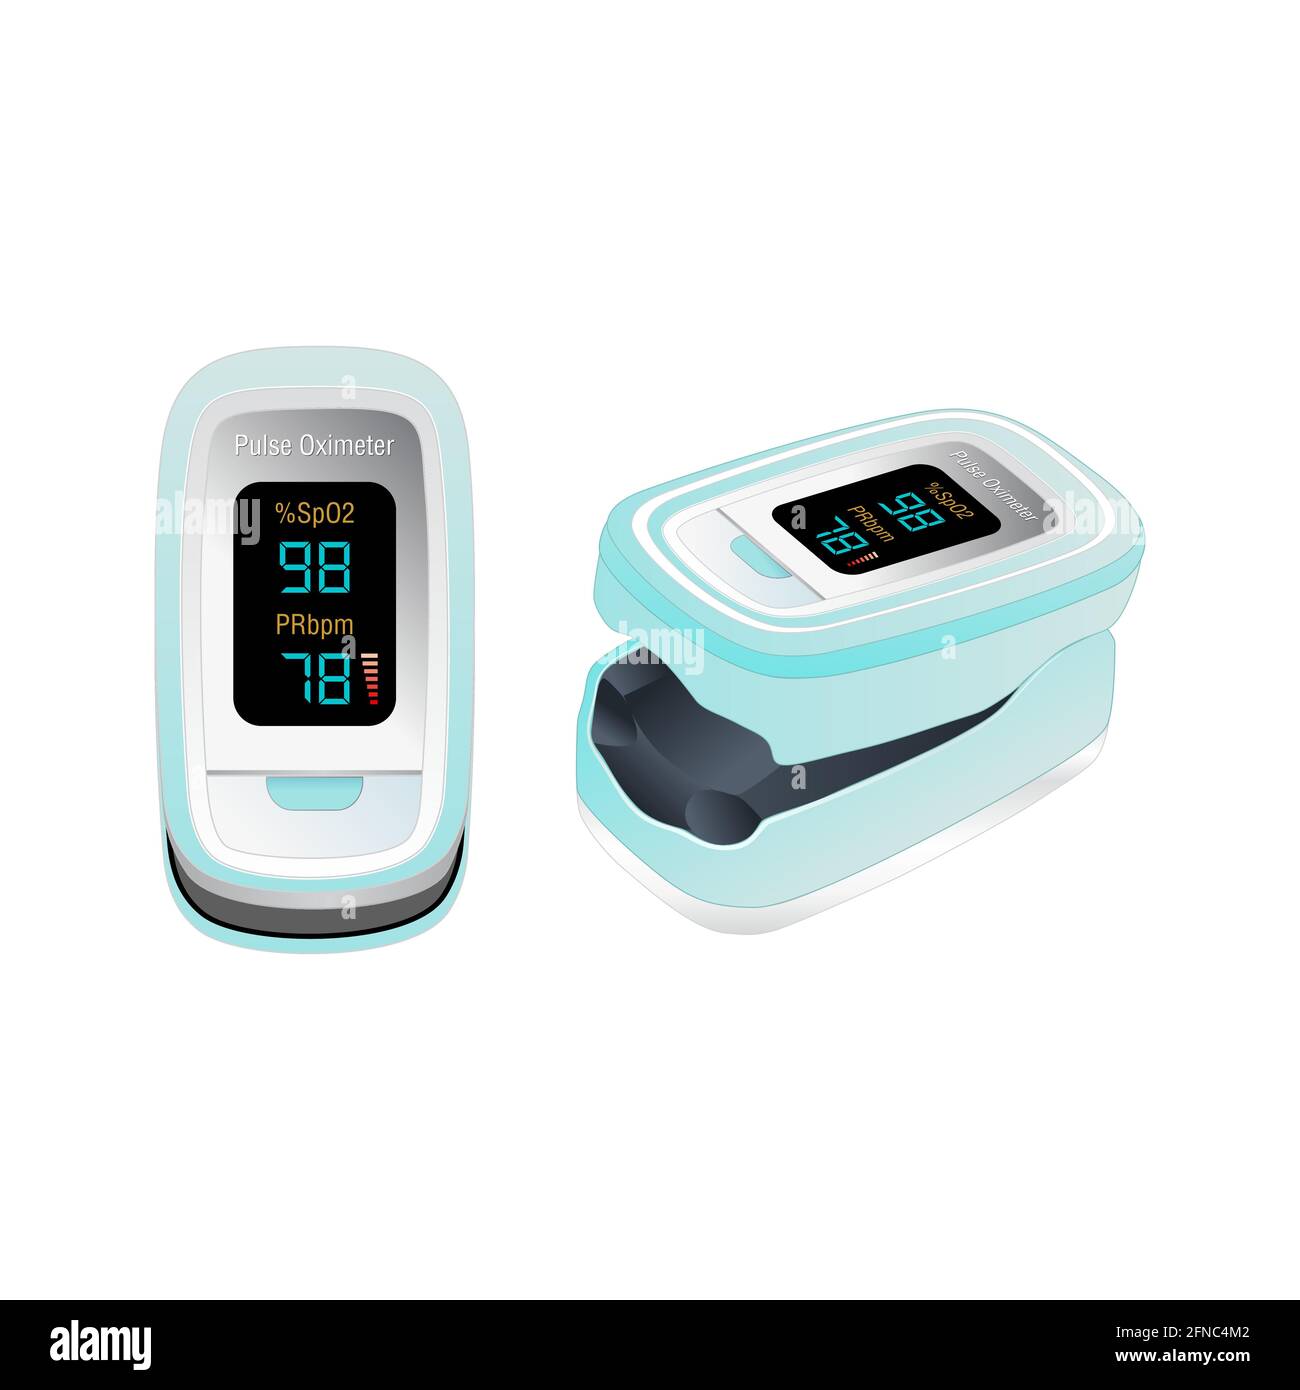 Pulsoximeter, Fingerspitze. Blutsauerstoffsättigungsmonitor mit Herzfrequenzerkennung, Symbol für medizinische Geräte, isoliert auf weißem Hintergrund. Gesundheit c Stock Vektor